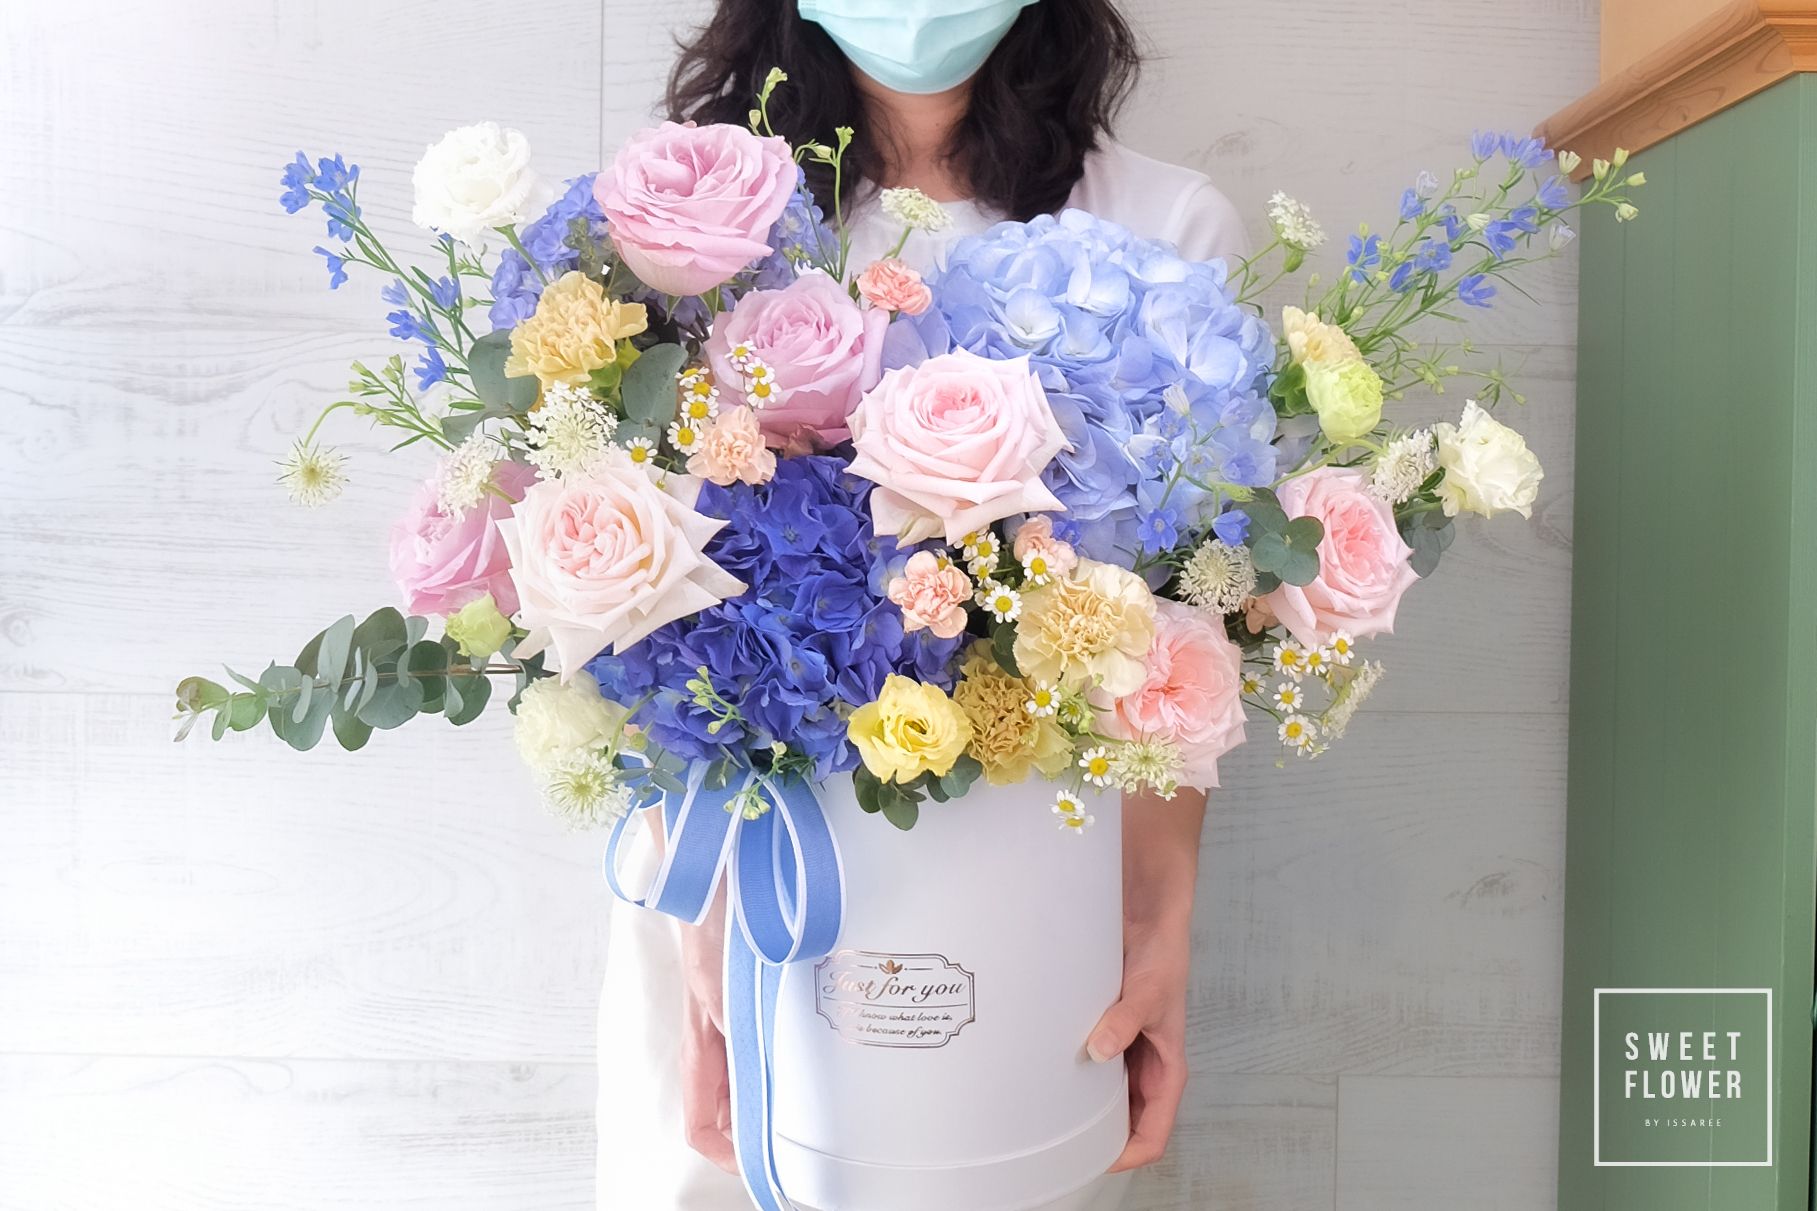 กล่องดอกไม้พิเศษให้คนที่ชอบโทนสีฟ้าน้ำเงิน